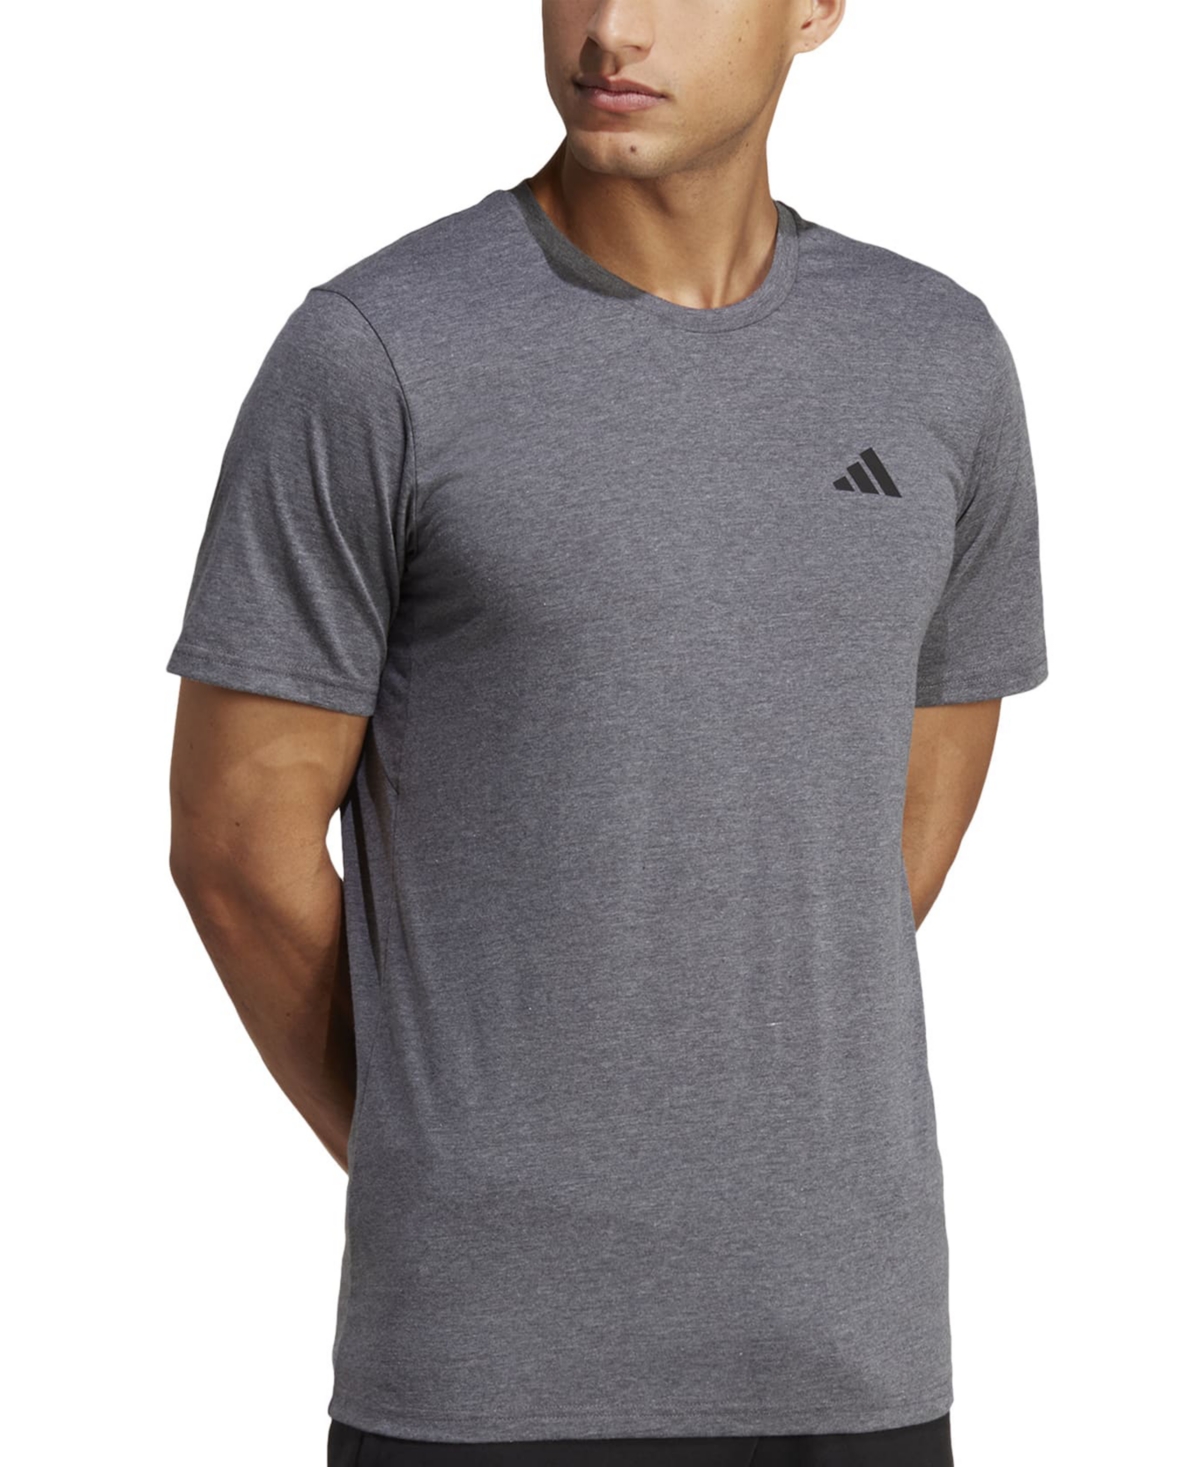 Adidas Originals Aeroready Training Essentials T-shirt In Dgh